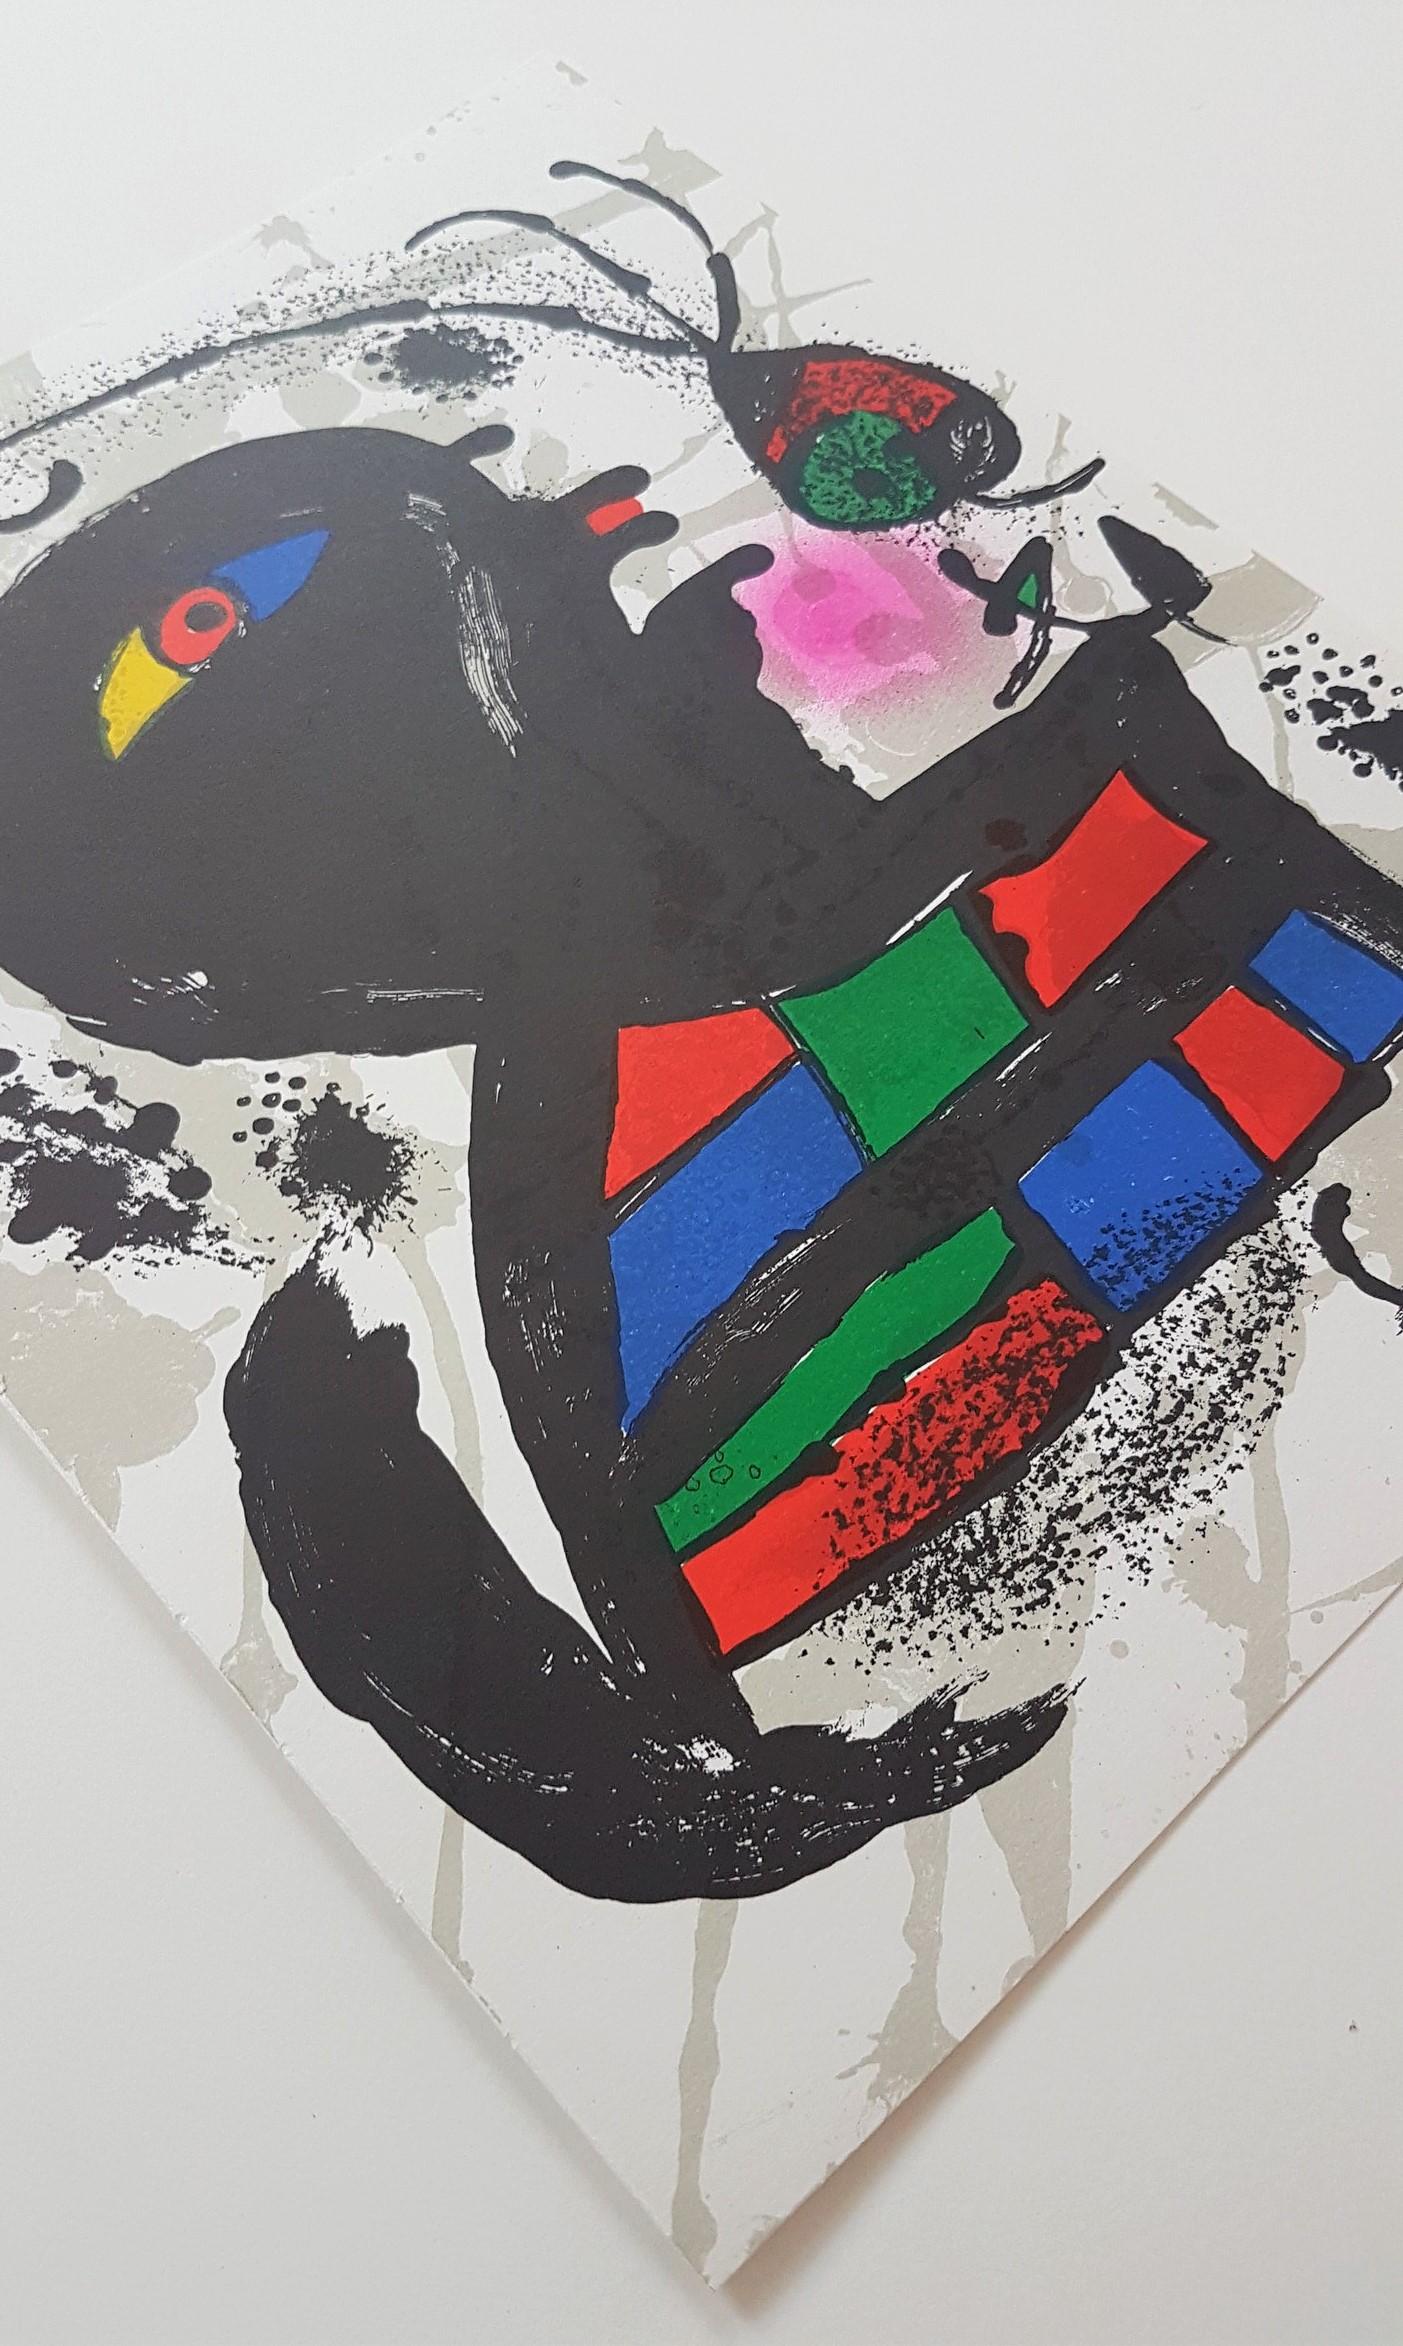 Joan Miró
Lithographie Originale V
Lithographie couleur
Année : 1977
Taille : 12.5 × 9.6 pouces
Catalogue Raisonné : Teixidor, Miro Lithographe III, 1964-1969
Éditeur : Maeght Editeur, Paris, France 
Verso : Annoté typographiquement : joan Miro -